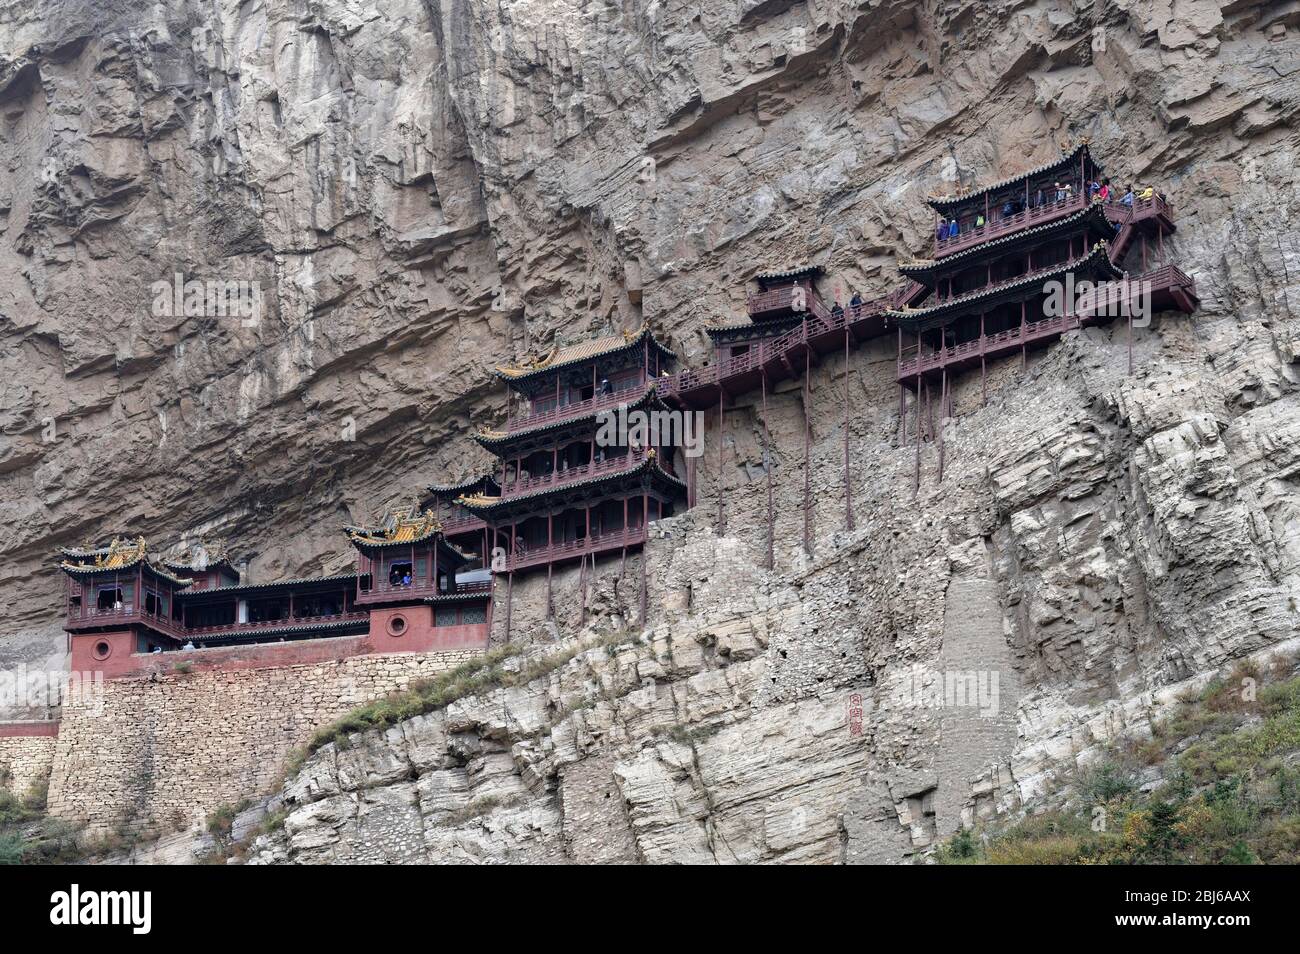 Monastère suspendu Xuankong si, Tangjiazhuang, Datong, Shanxi Sheng, Chine Banque D'Images